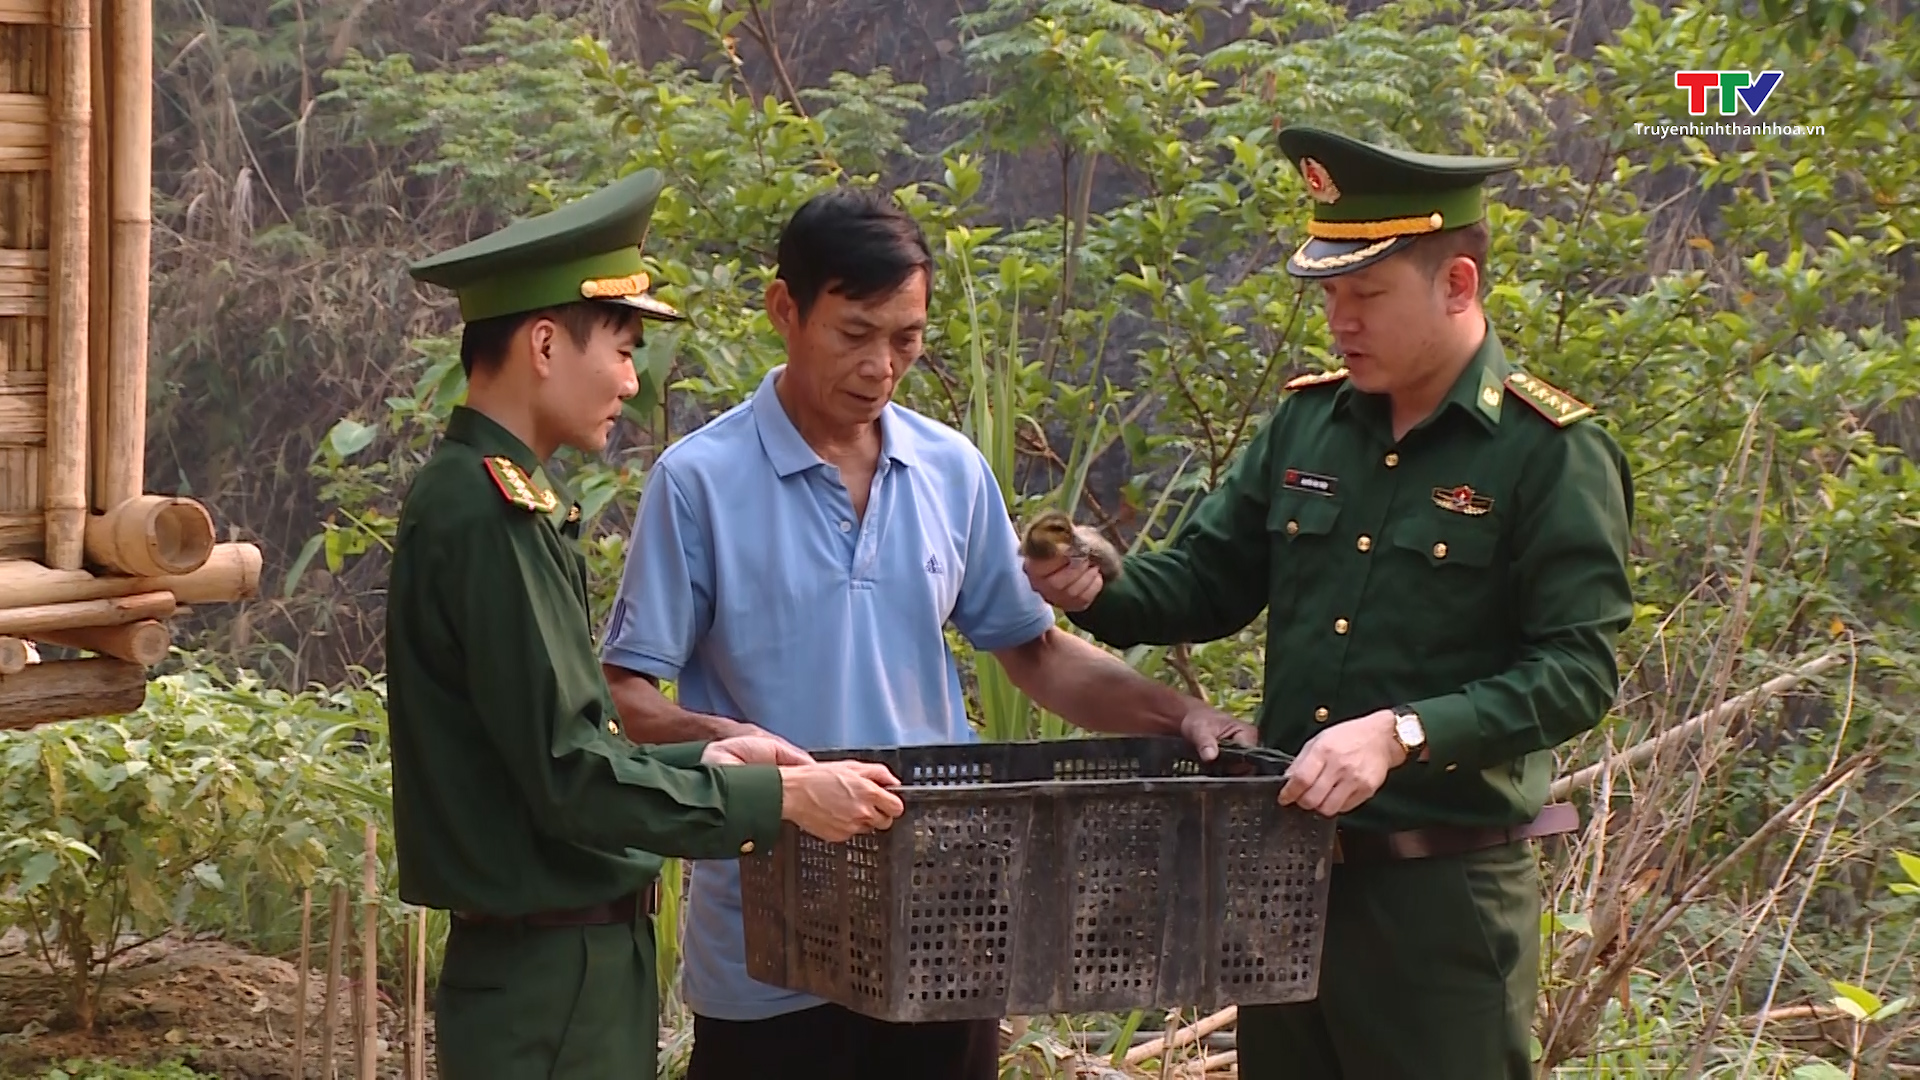 Bộ đội Biên phòng Thanh Hoá sát cánh cùng các địa phương xây dựng nông thôn mới - Ảnh 3.